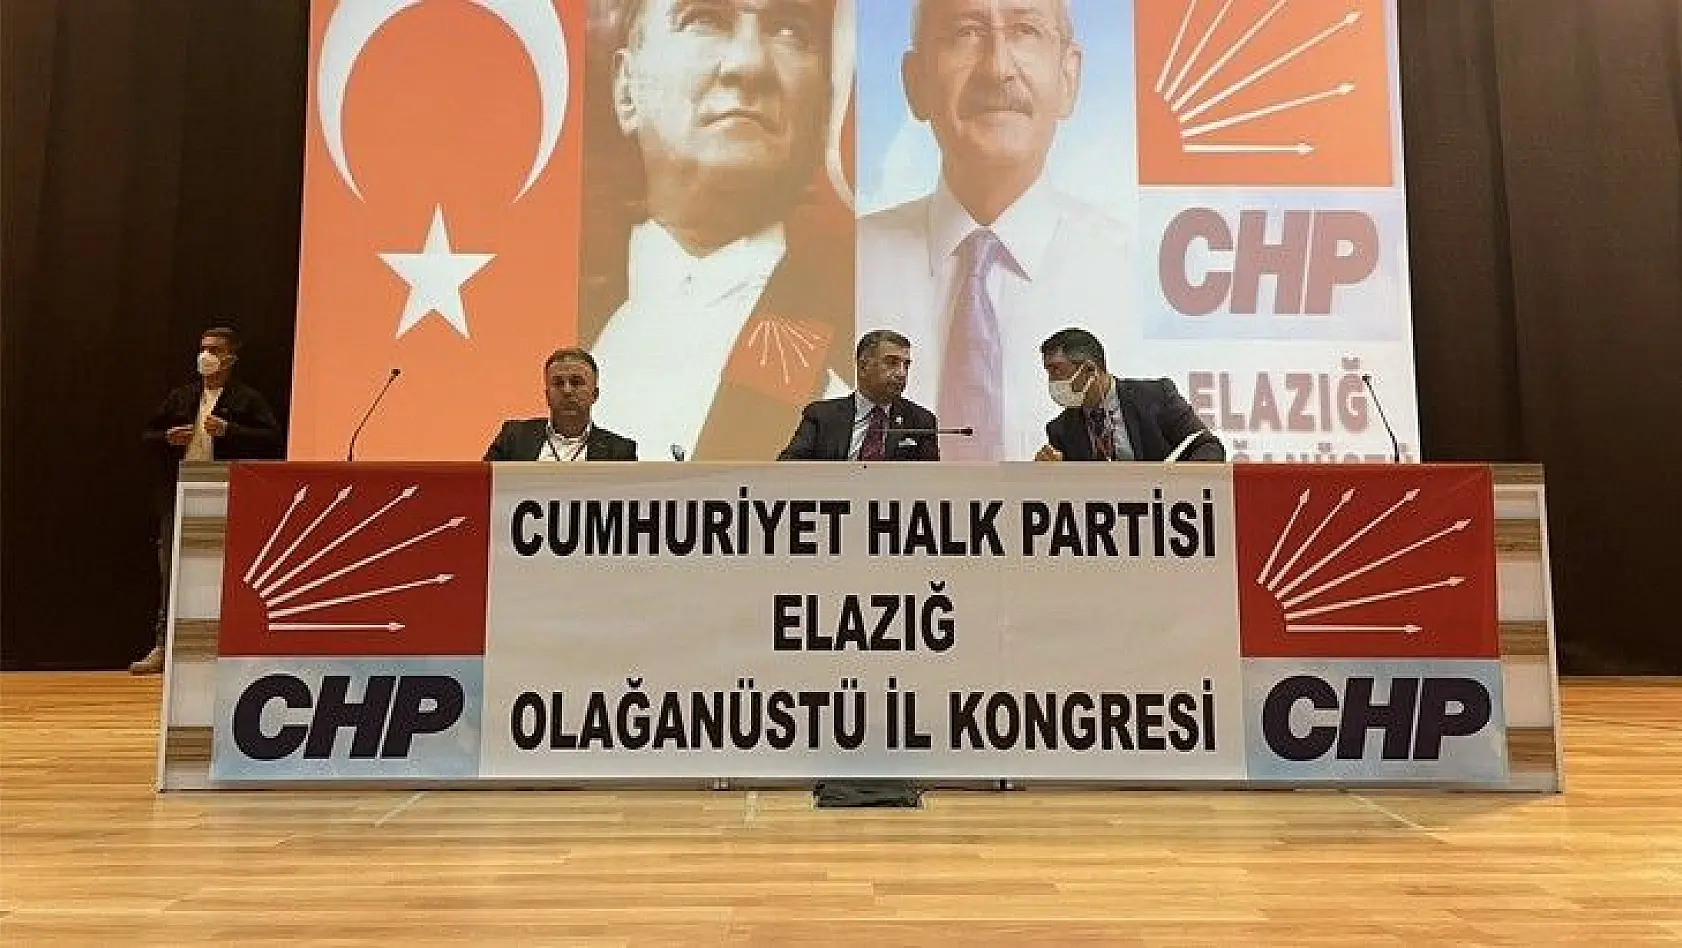 CHP Olağanüstü İl Kongresi İlk Defa Basına Kapalı Bir Şekilde Gerçekleştiriliyor